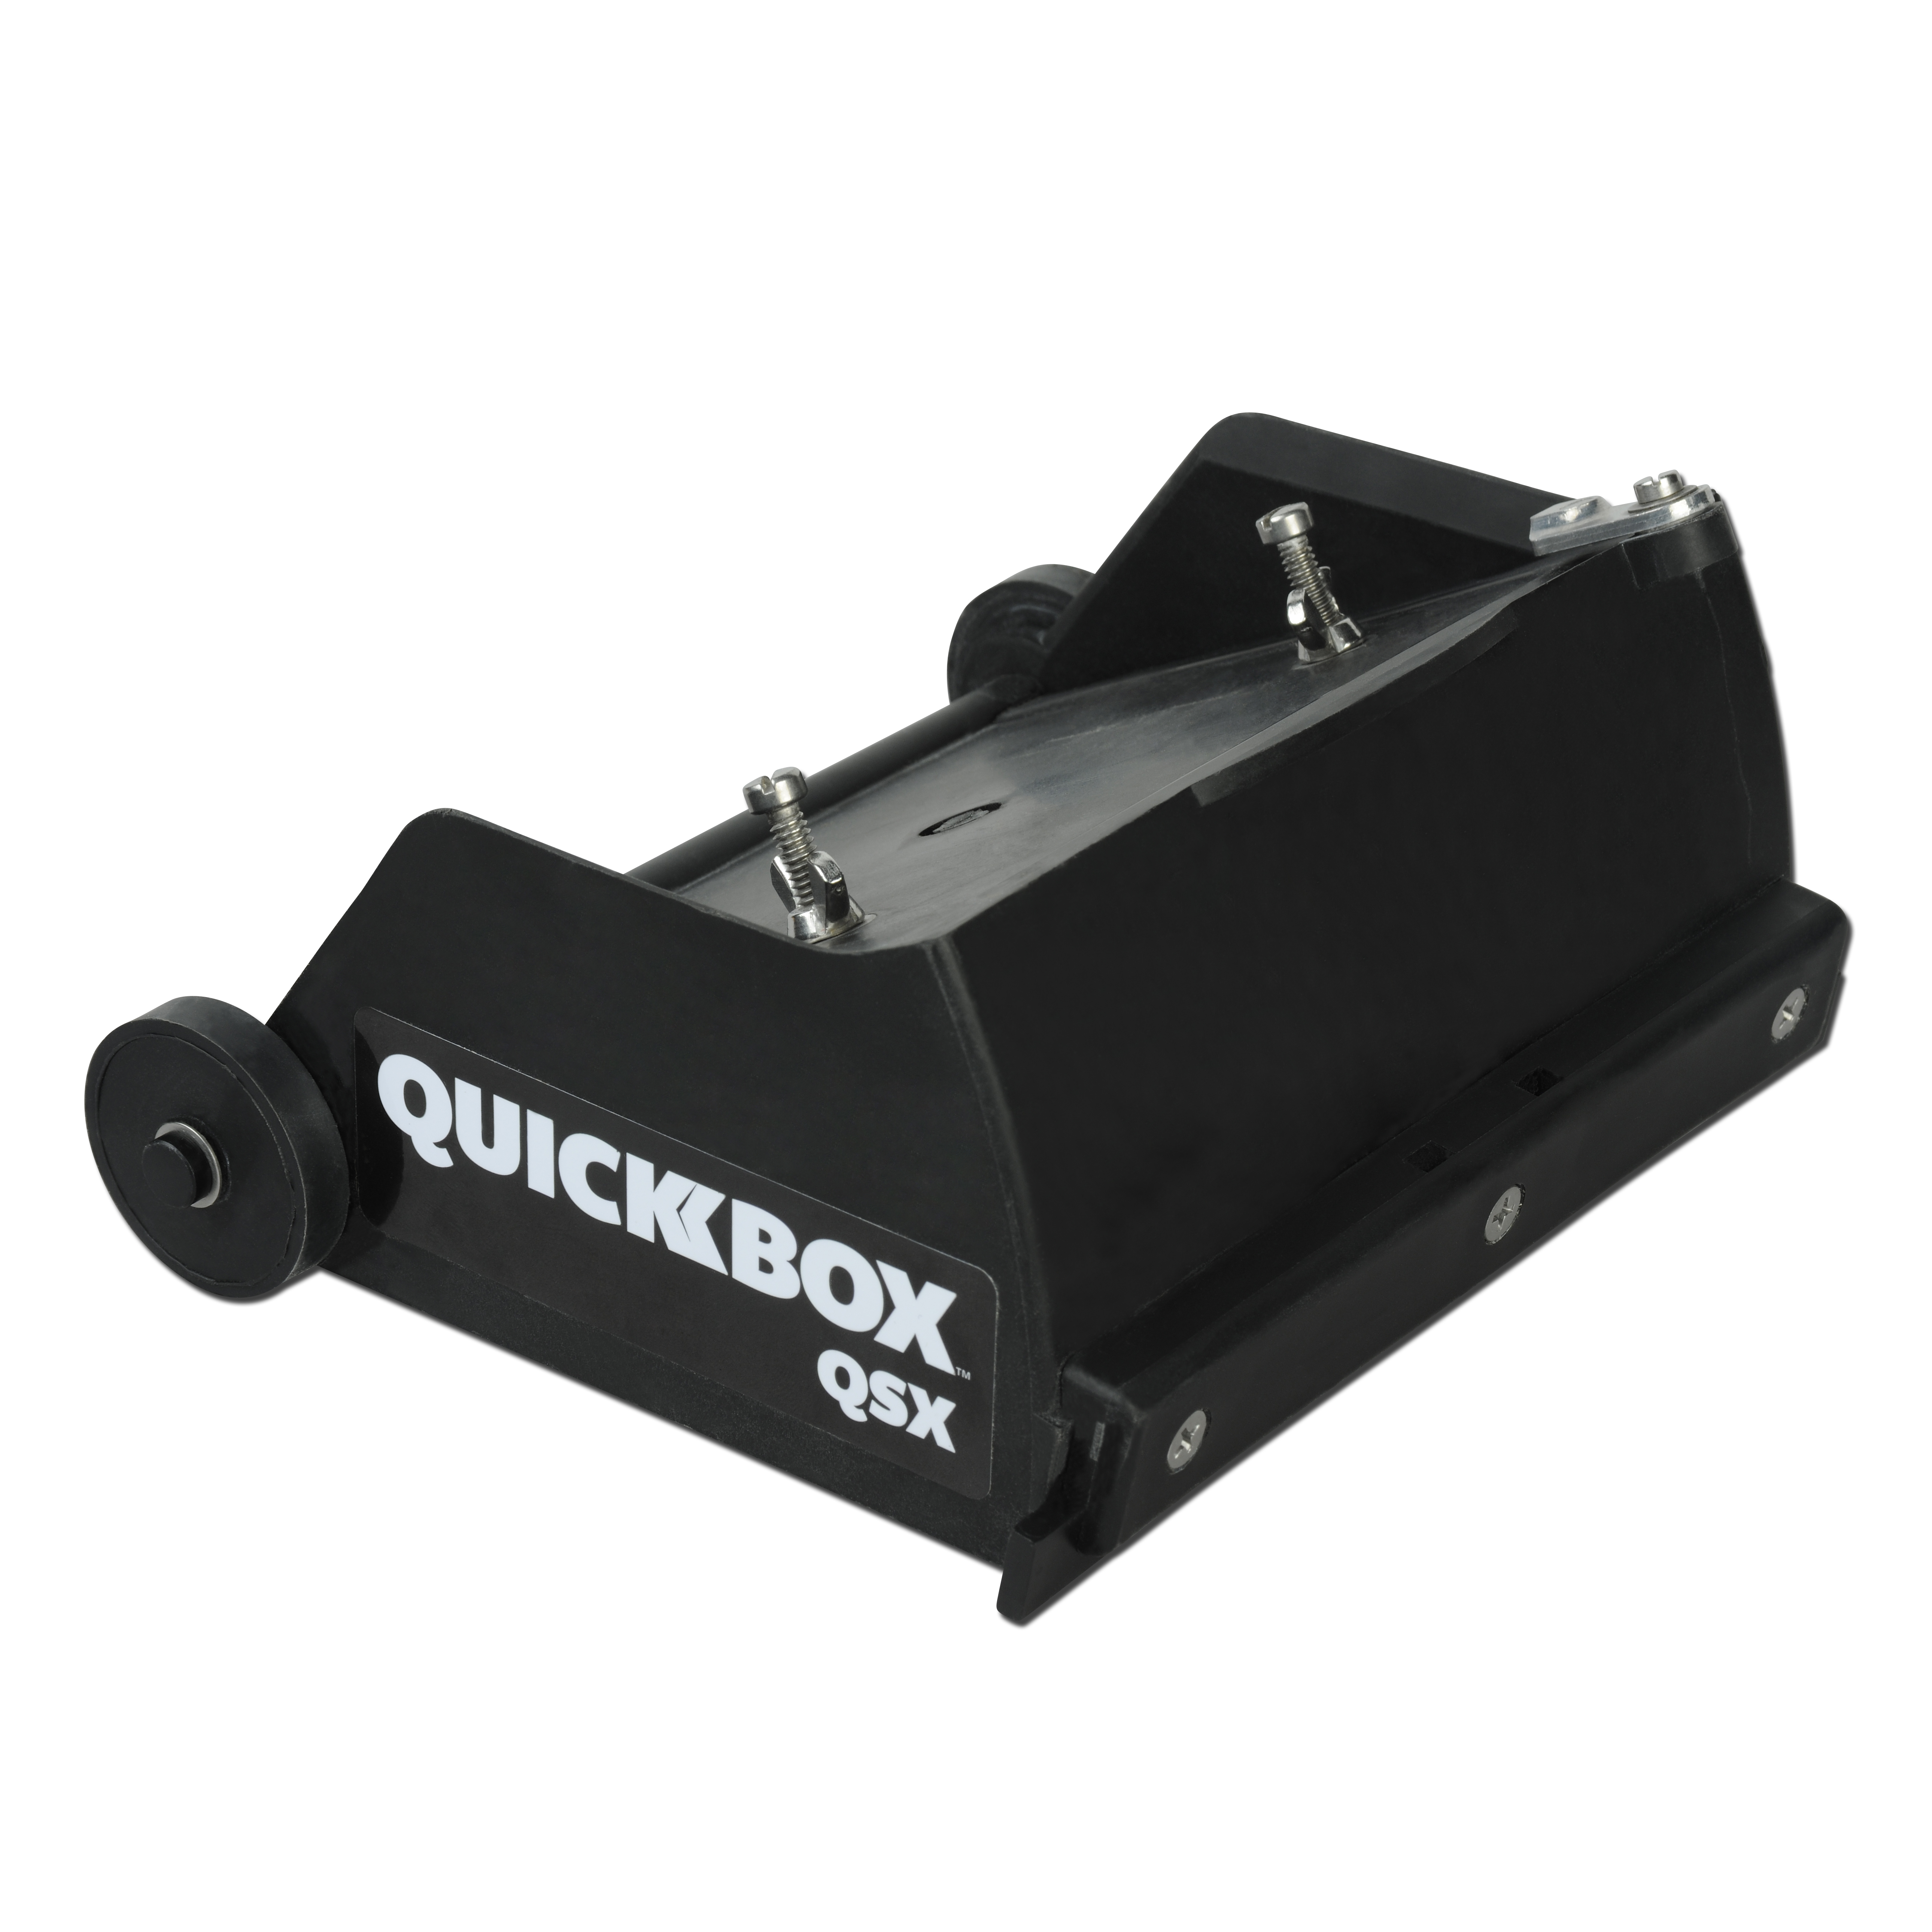 QuickBox™ QSX